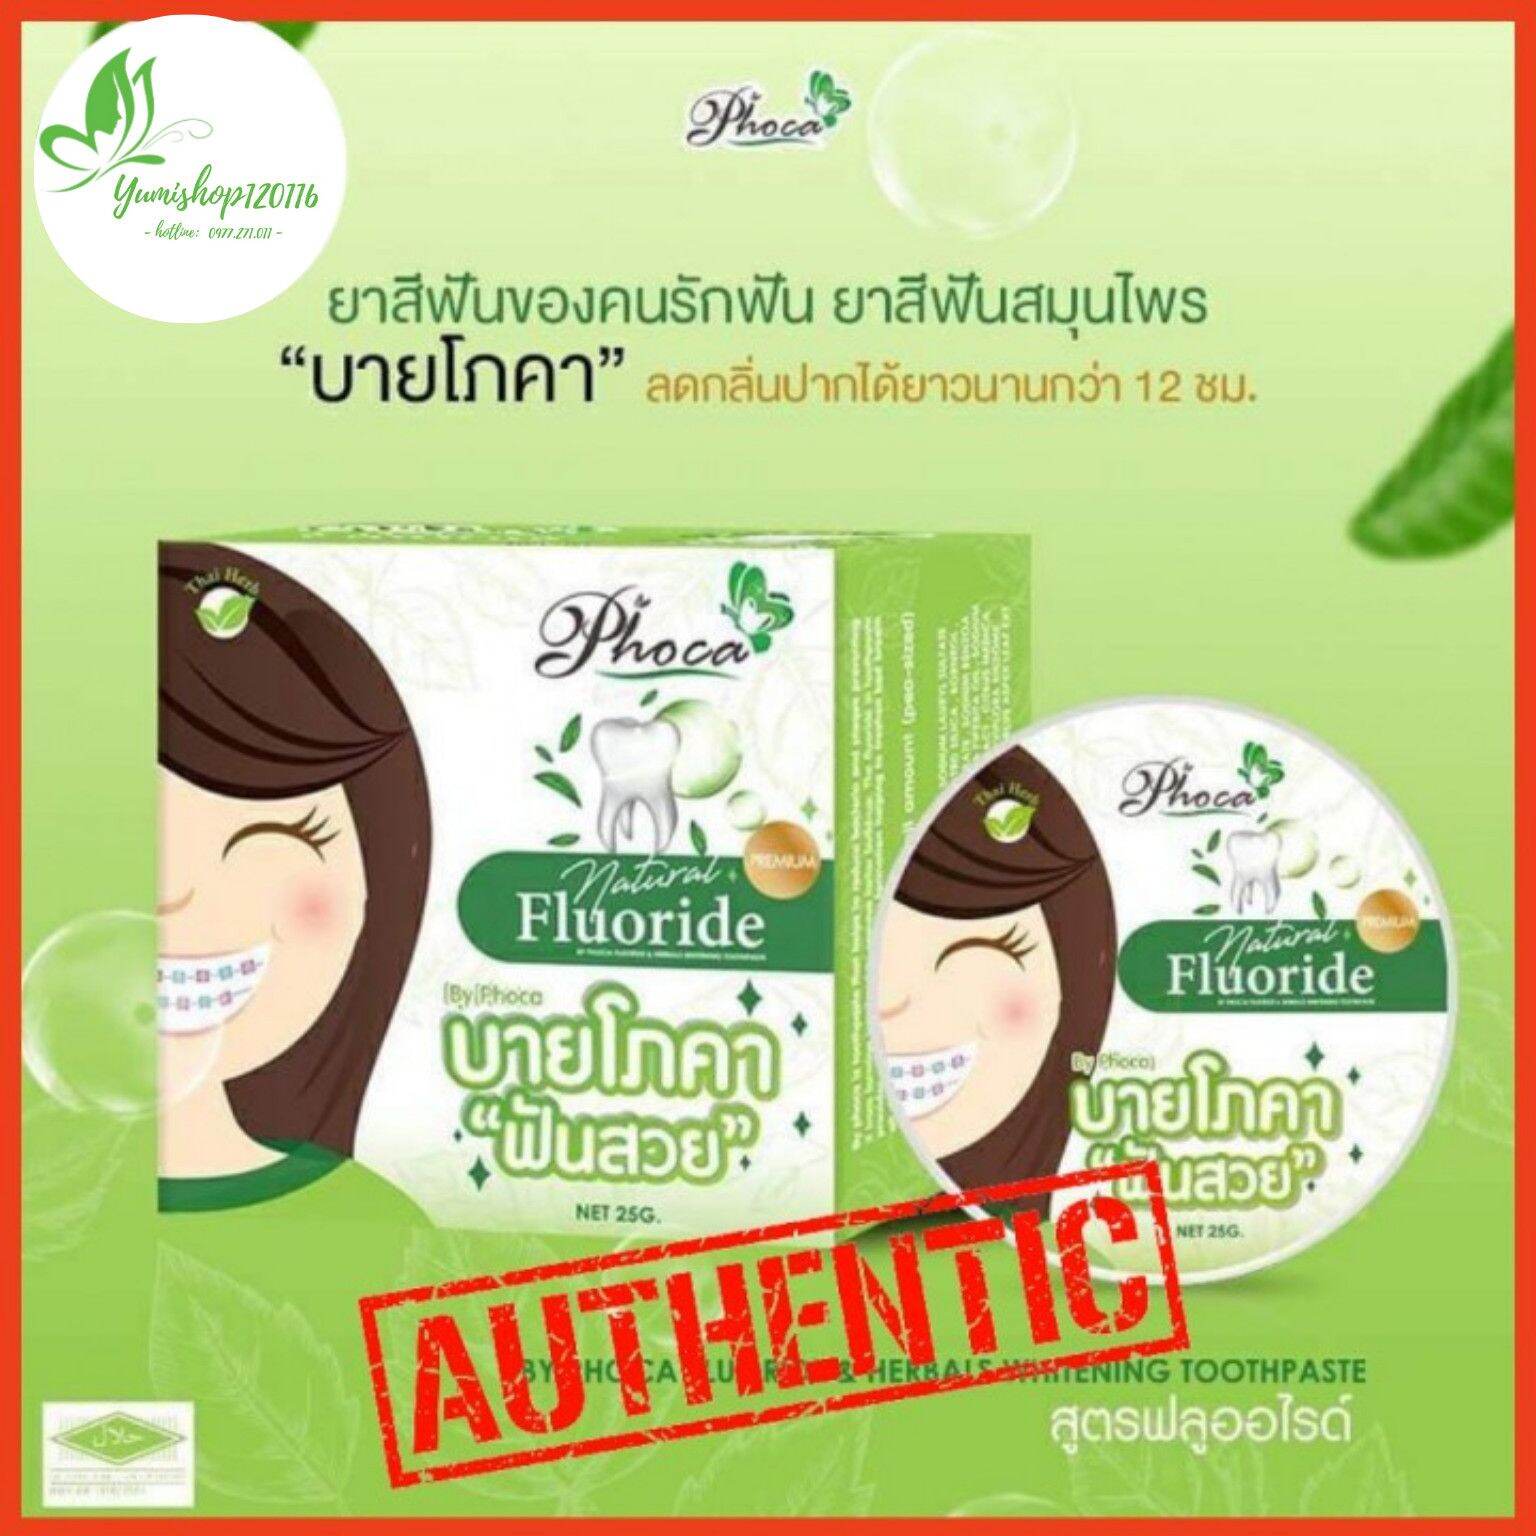 5 Hộp Kem Đánh Răng Thảo Dược Phoca Của Thái Lan